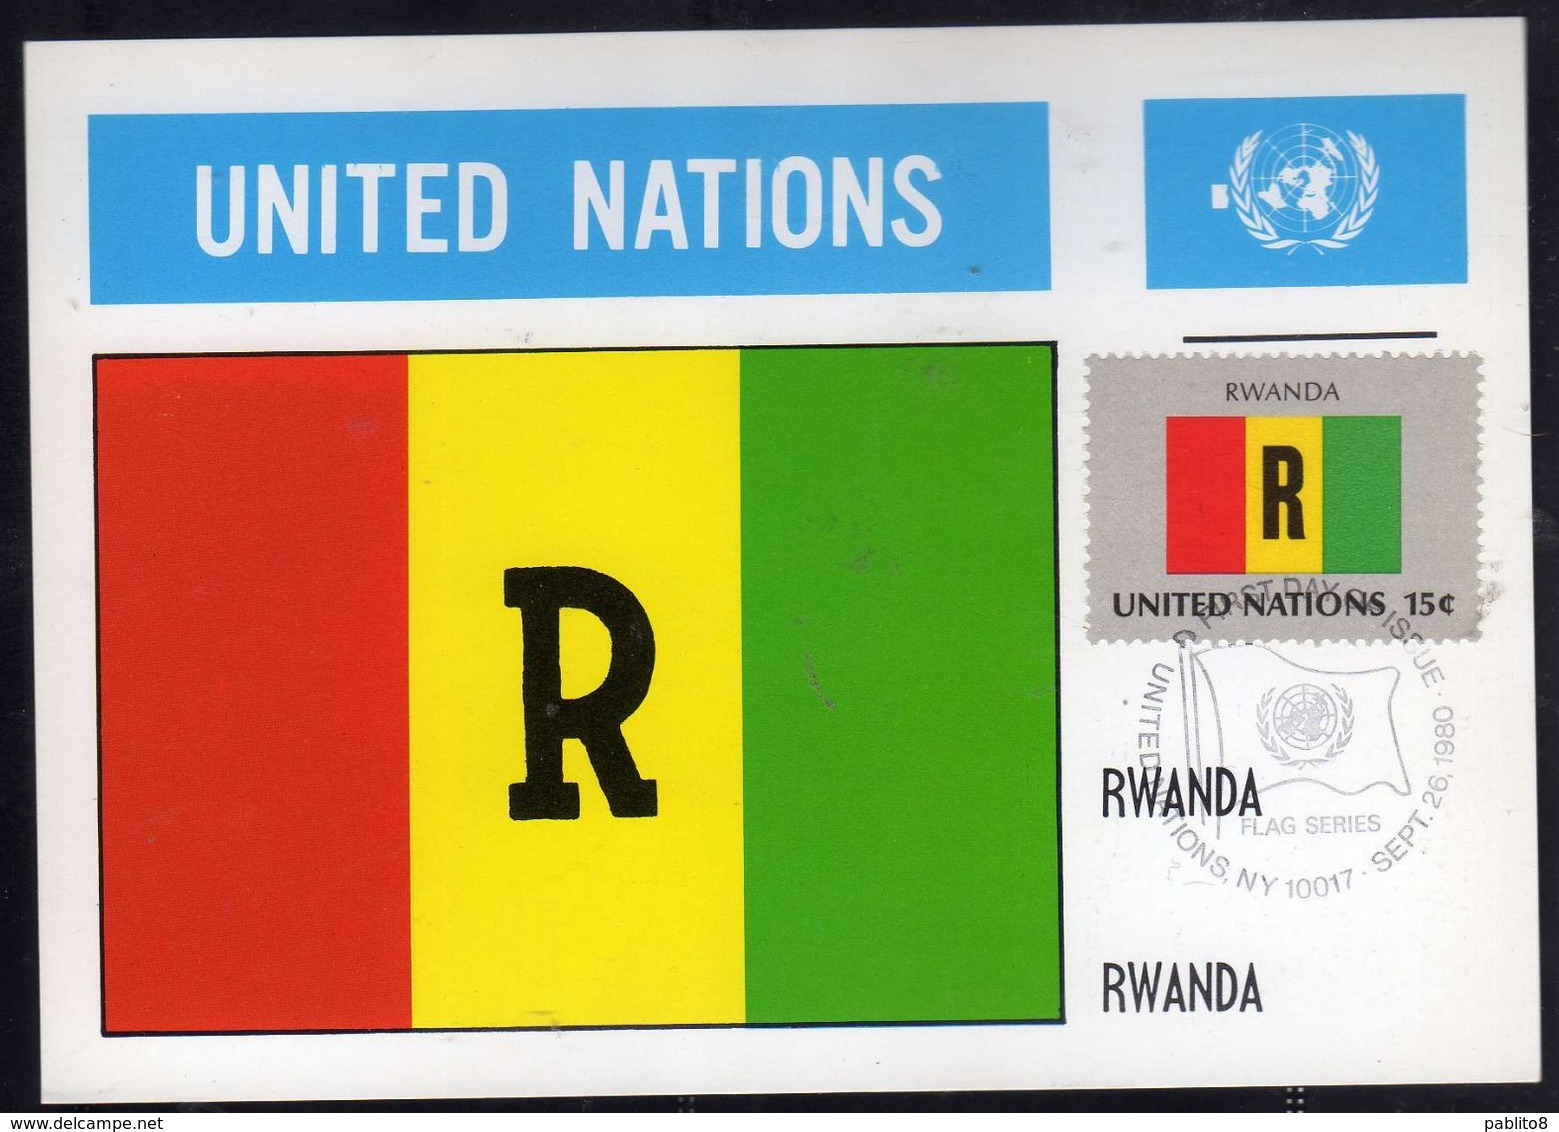 UNITED NATIONS NEW YORK ONU UN UNO 1980 FLAGS RWANDA RUANDA FDC MAXI CARD CARTOLINA MAXIMUM - Maximum Cards